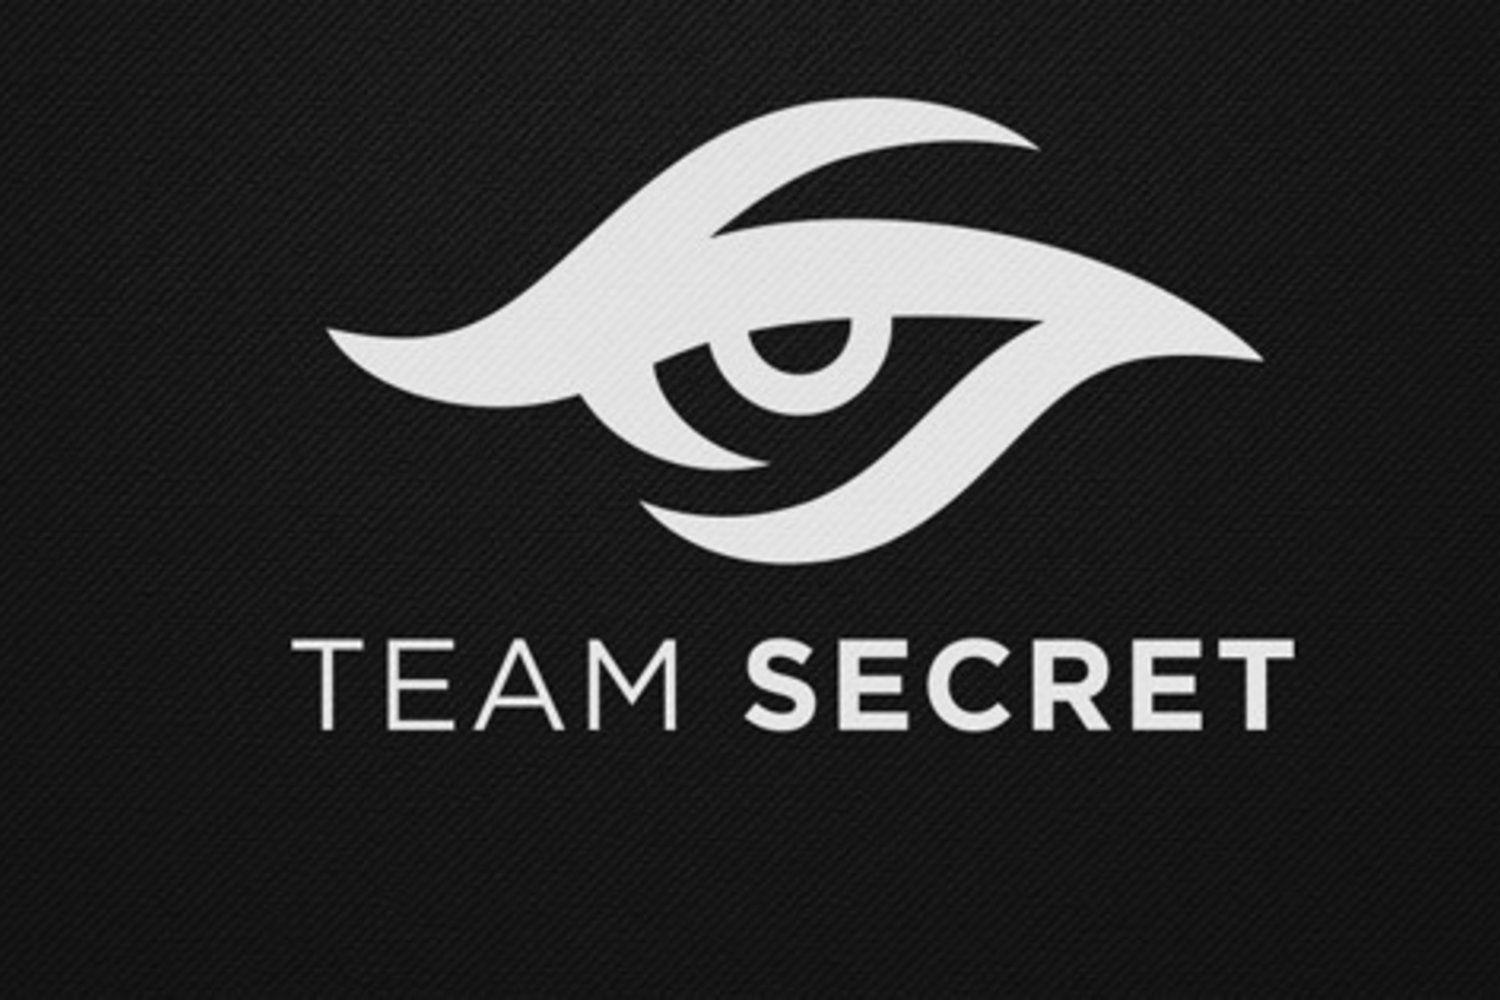 Secret Logo - File:Team Secret's logo.jpg - Wikimedia Commons